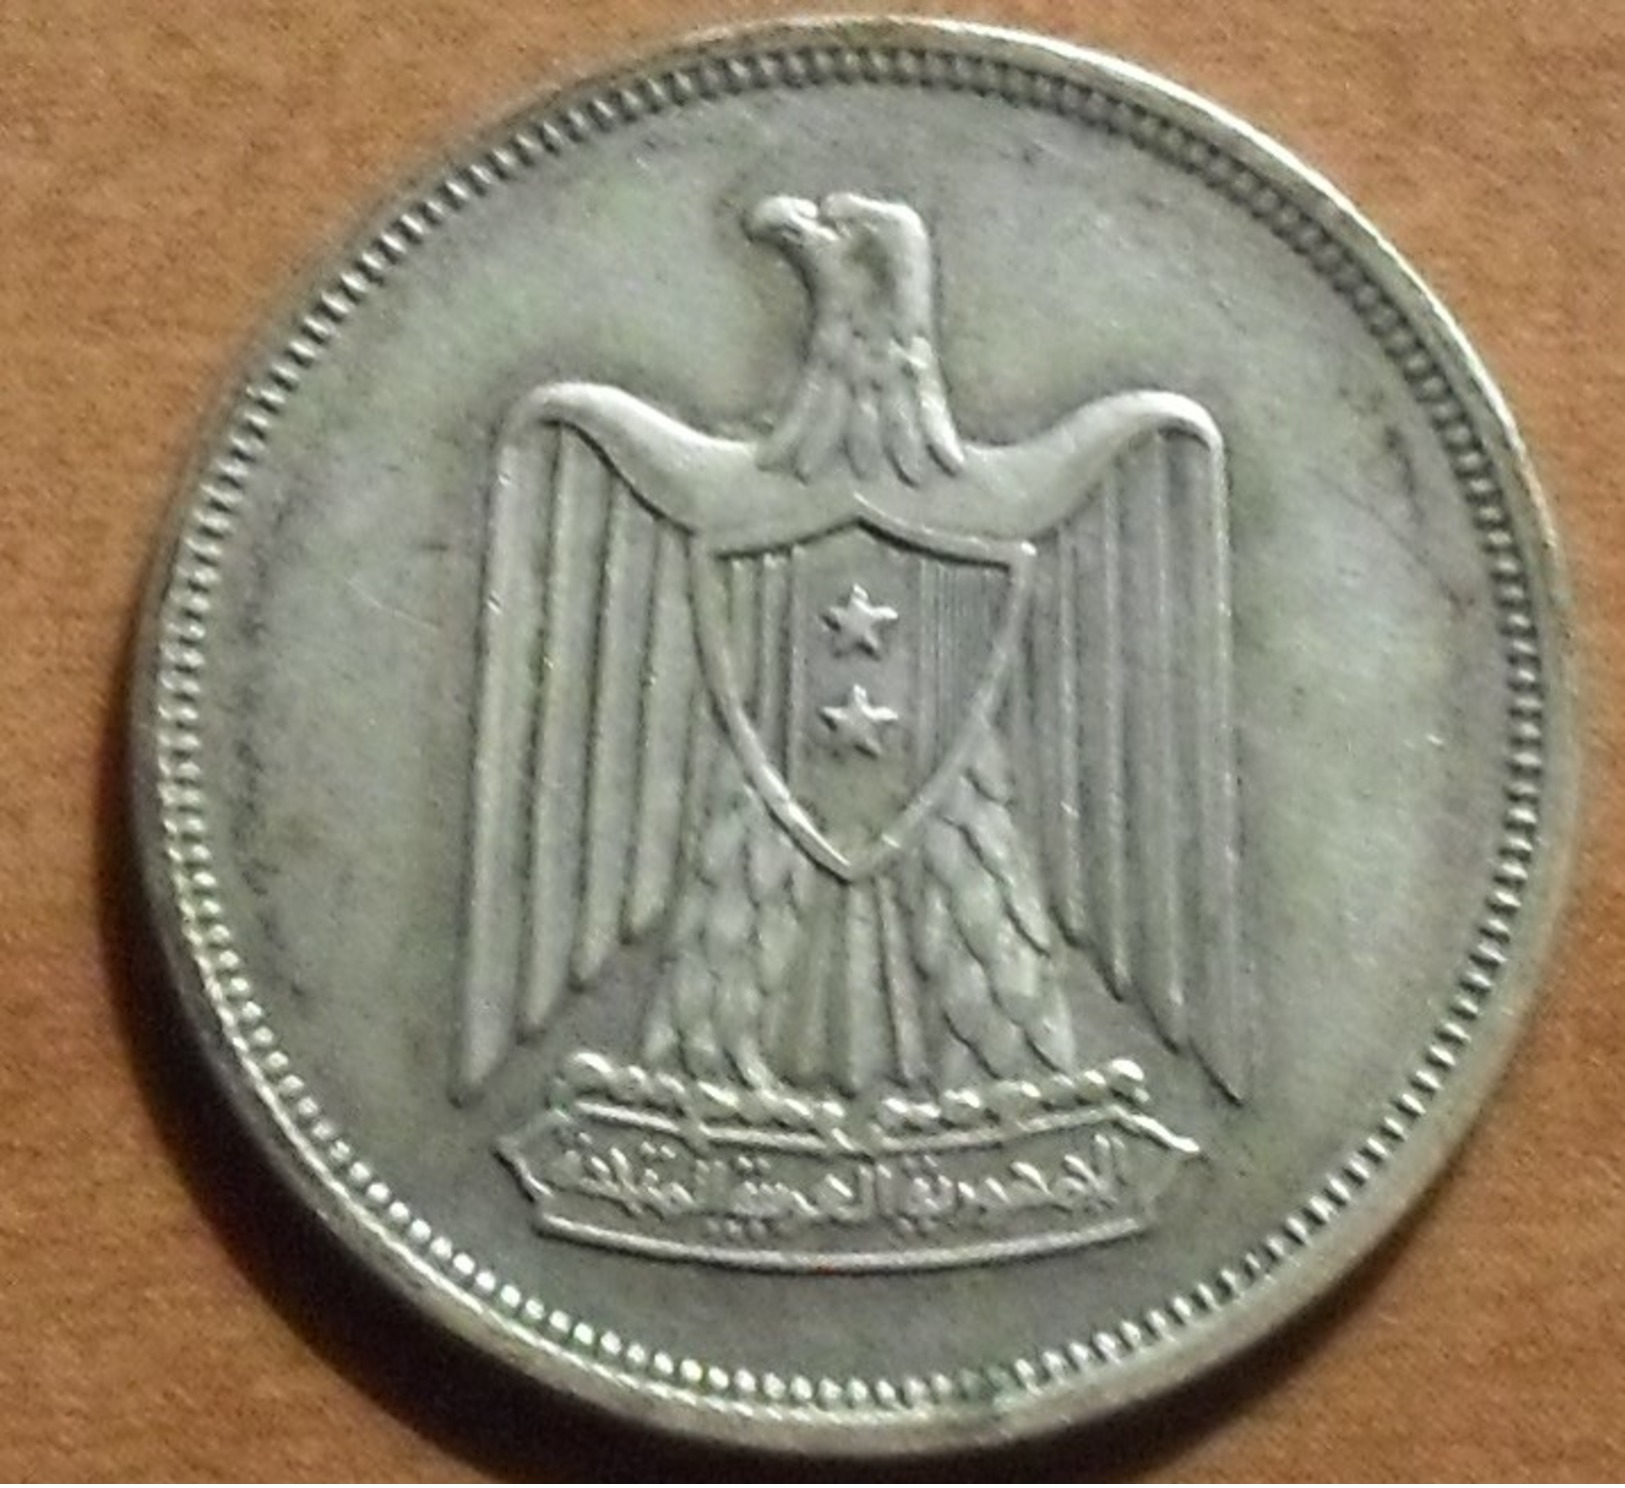 1960 - Egypte - Egypt - 1380 - 10 PIASTRES, Argent, Silver - KM 398 - Egitto